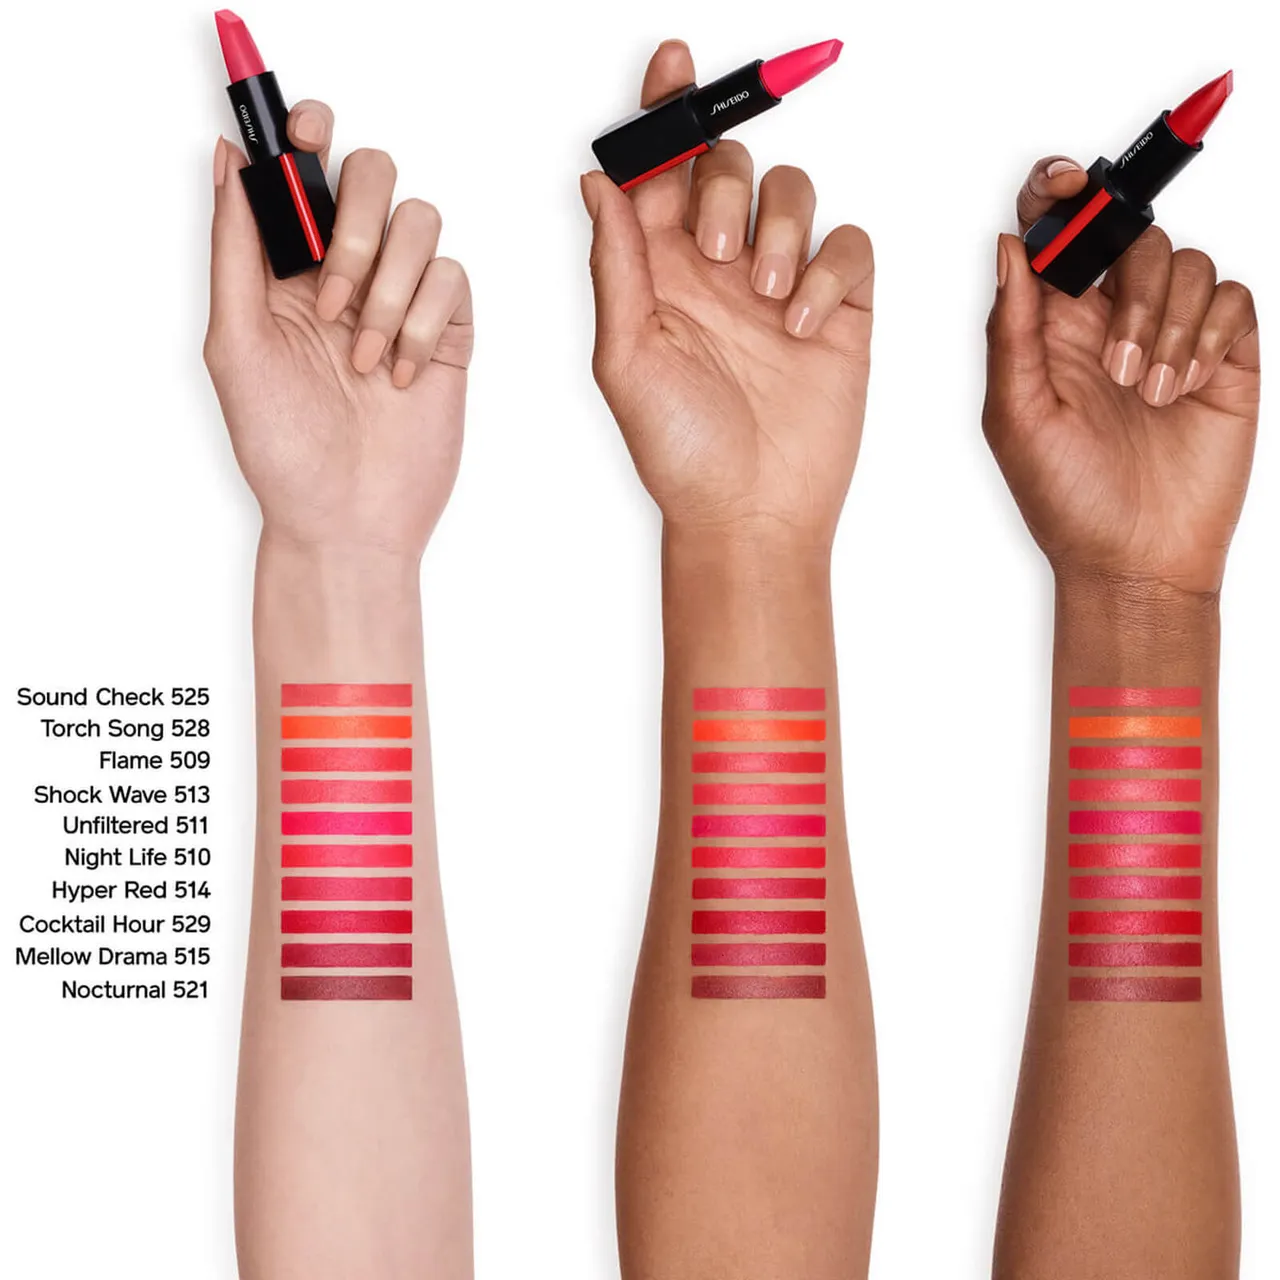 Shiseido ModernMatte Powder Lipstick (verschiedene Farbtöne) - Lipstick Disrobed 506